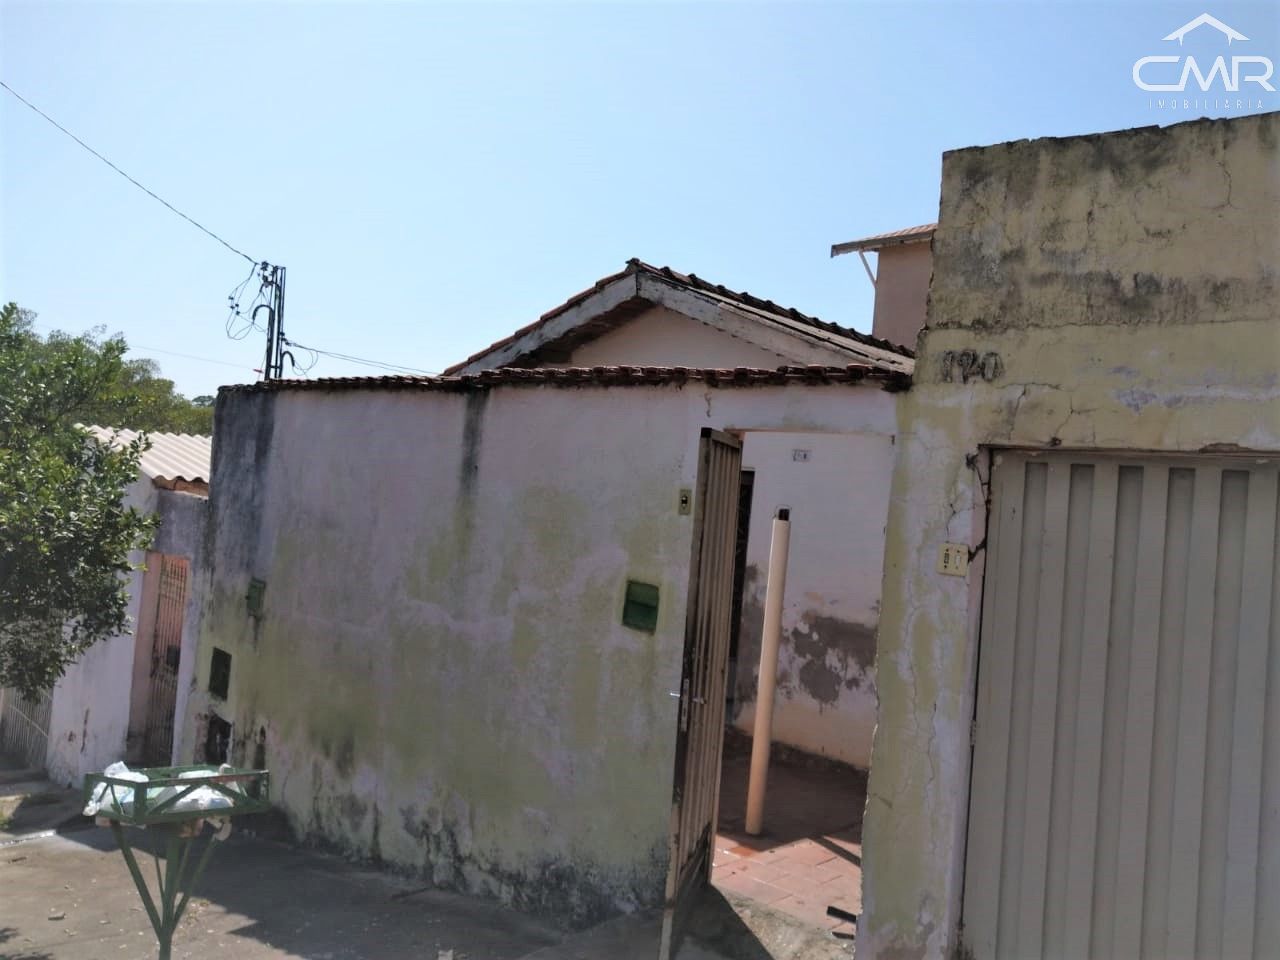 Casa  venda  no Jardim Glria - Piracicaba, SP. Imveis